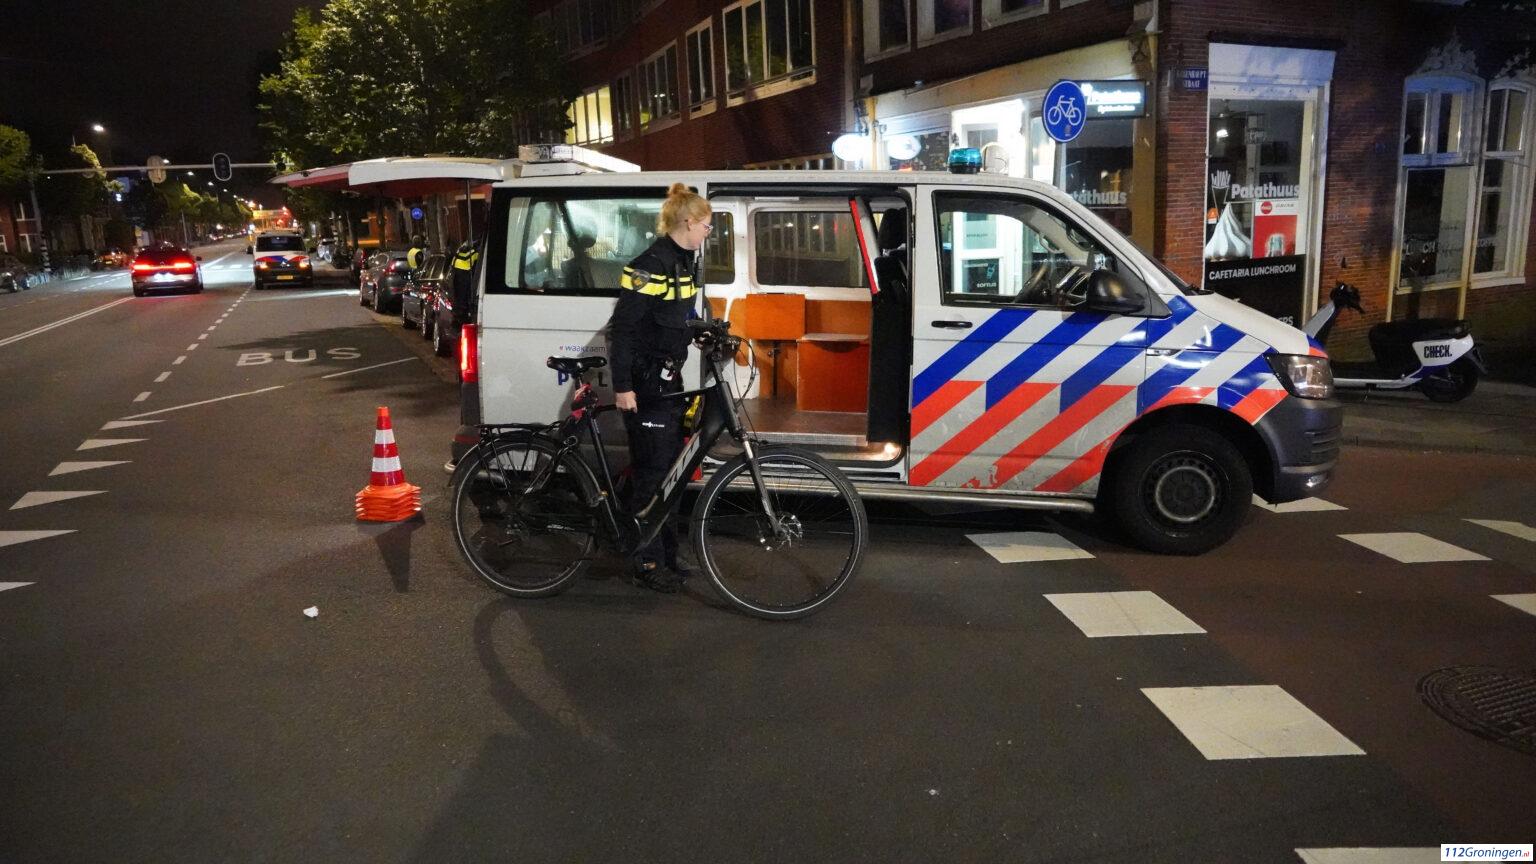 Ongeval op de Hereweg in Groningen, 1 gewonde.